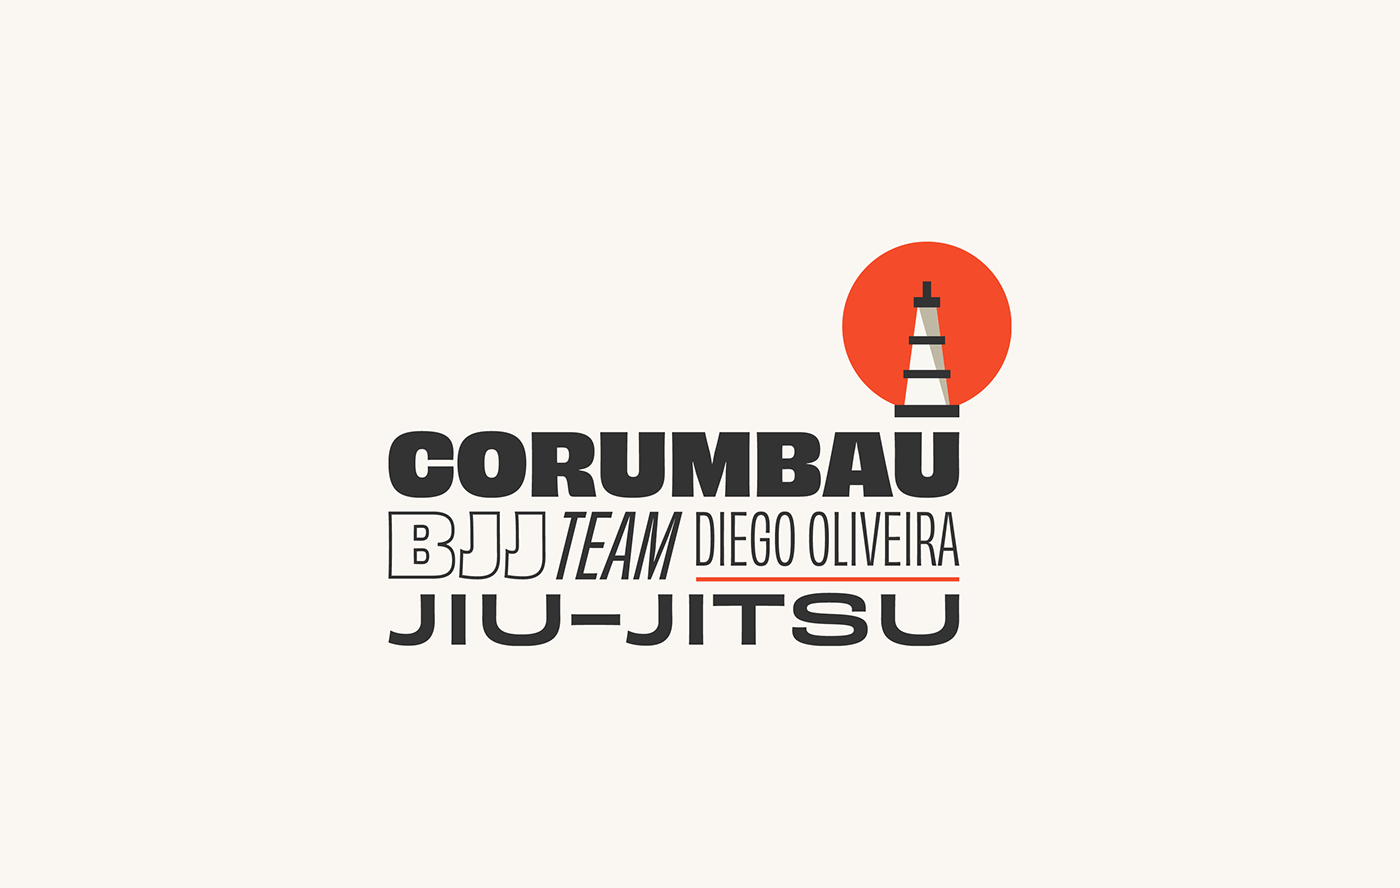 jiu jitsu BJJ jitsu team design Esporte luta Corumbau